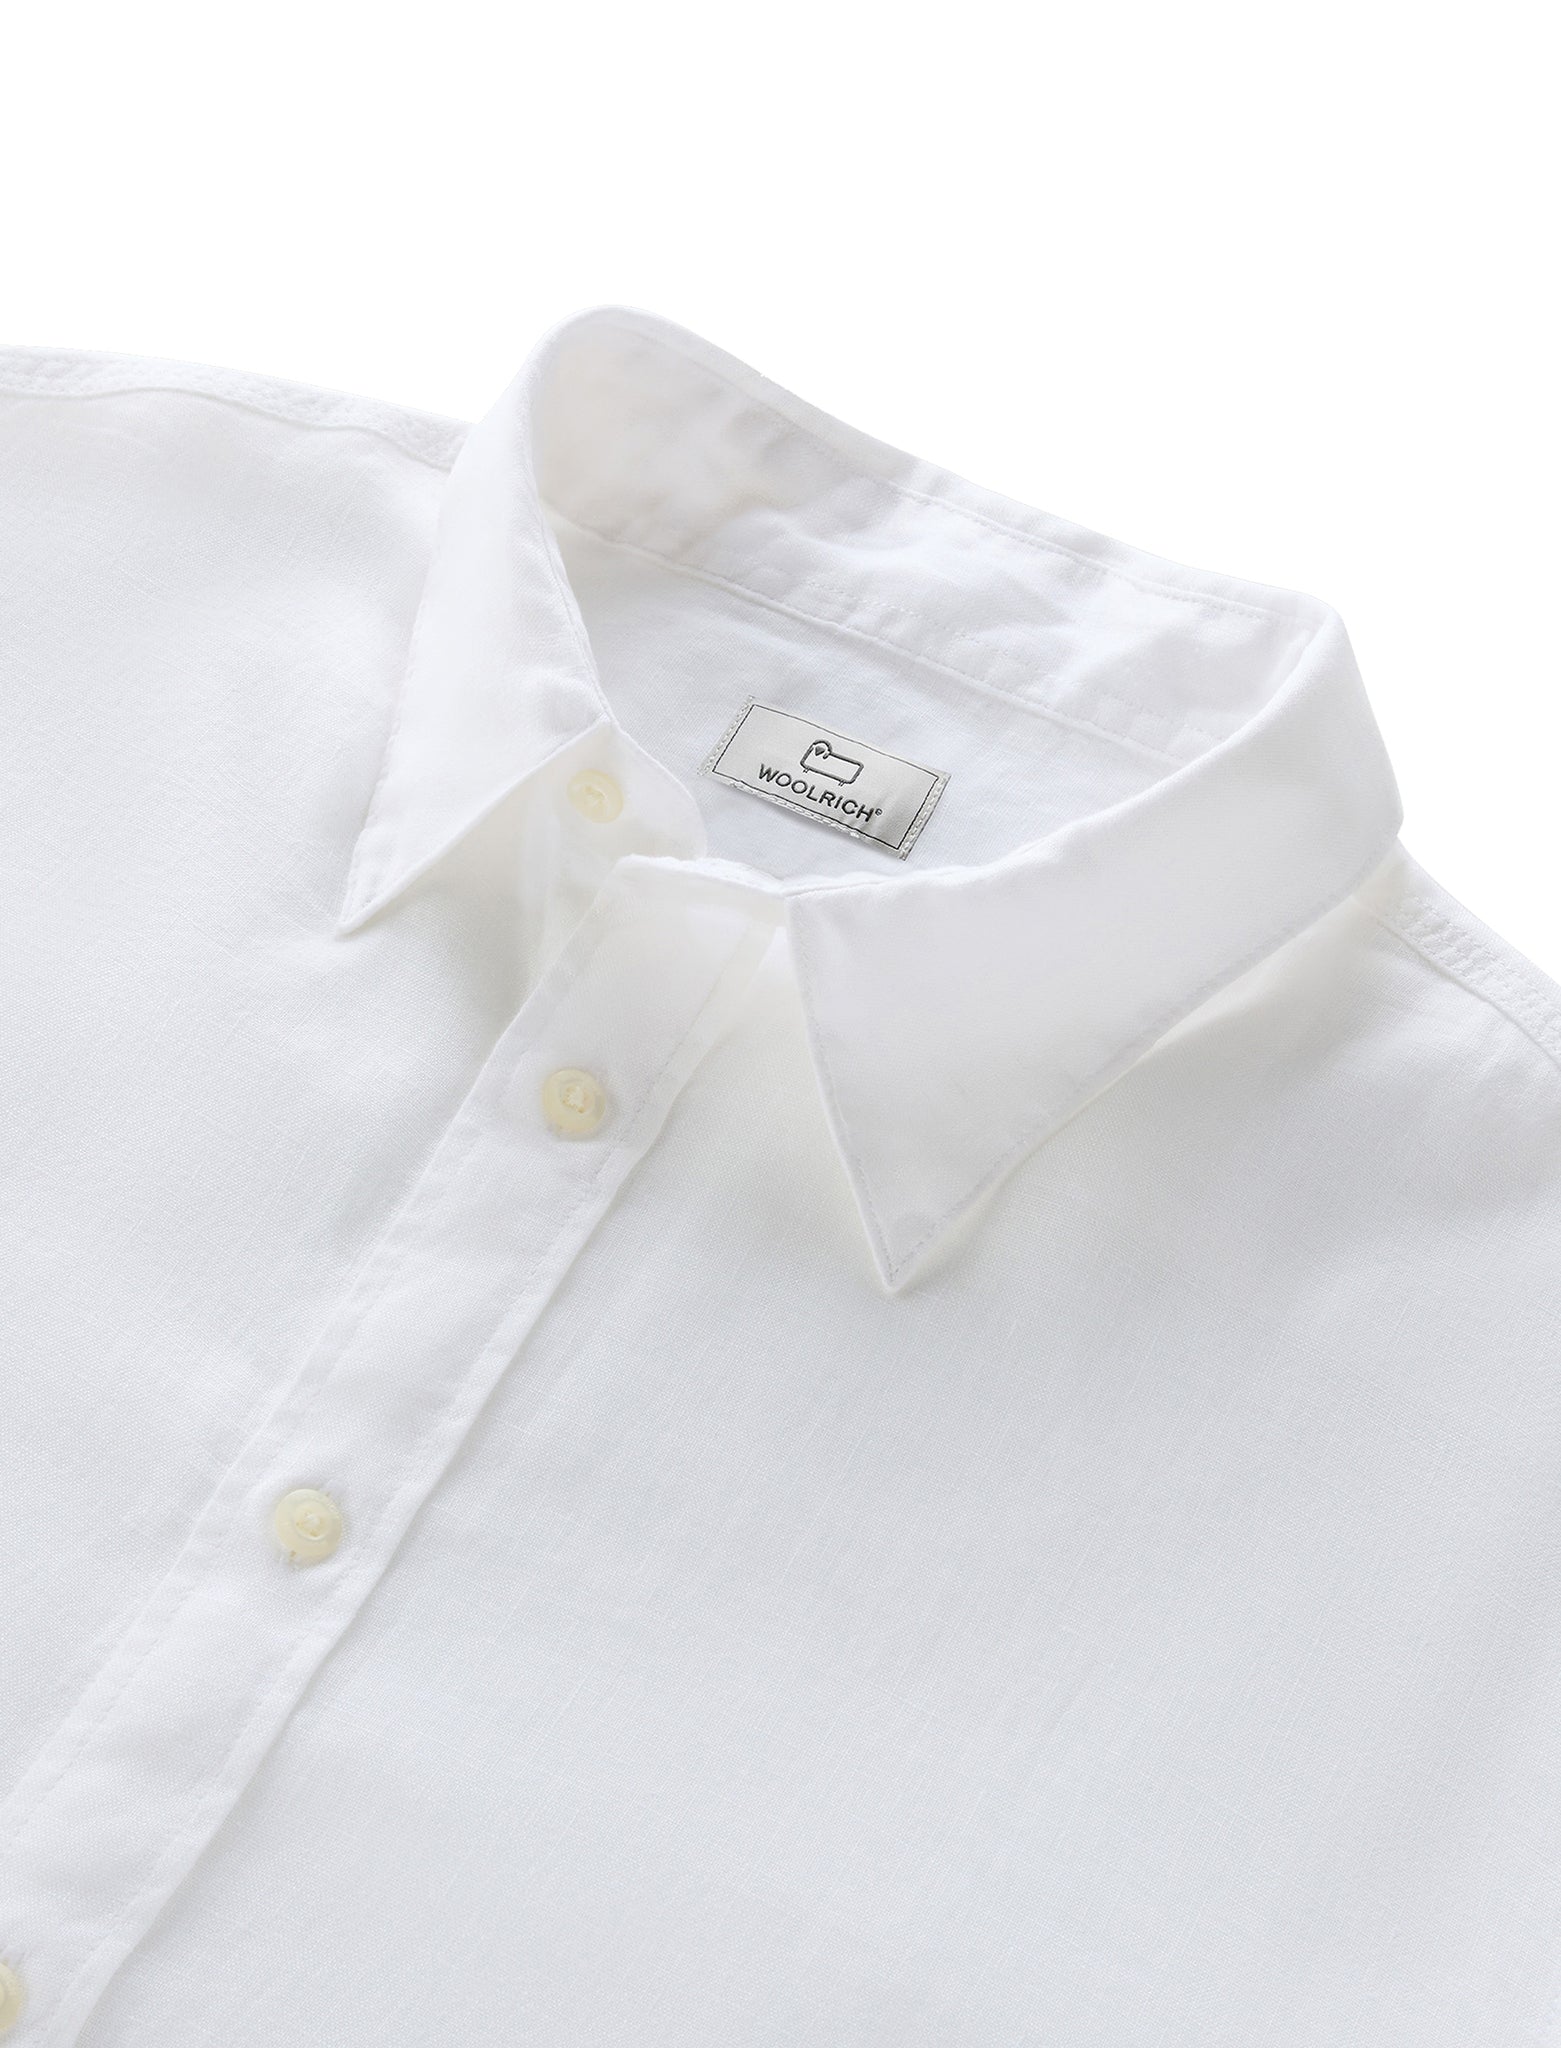 Woolrich Linen Shirt White Men's Shirt